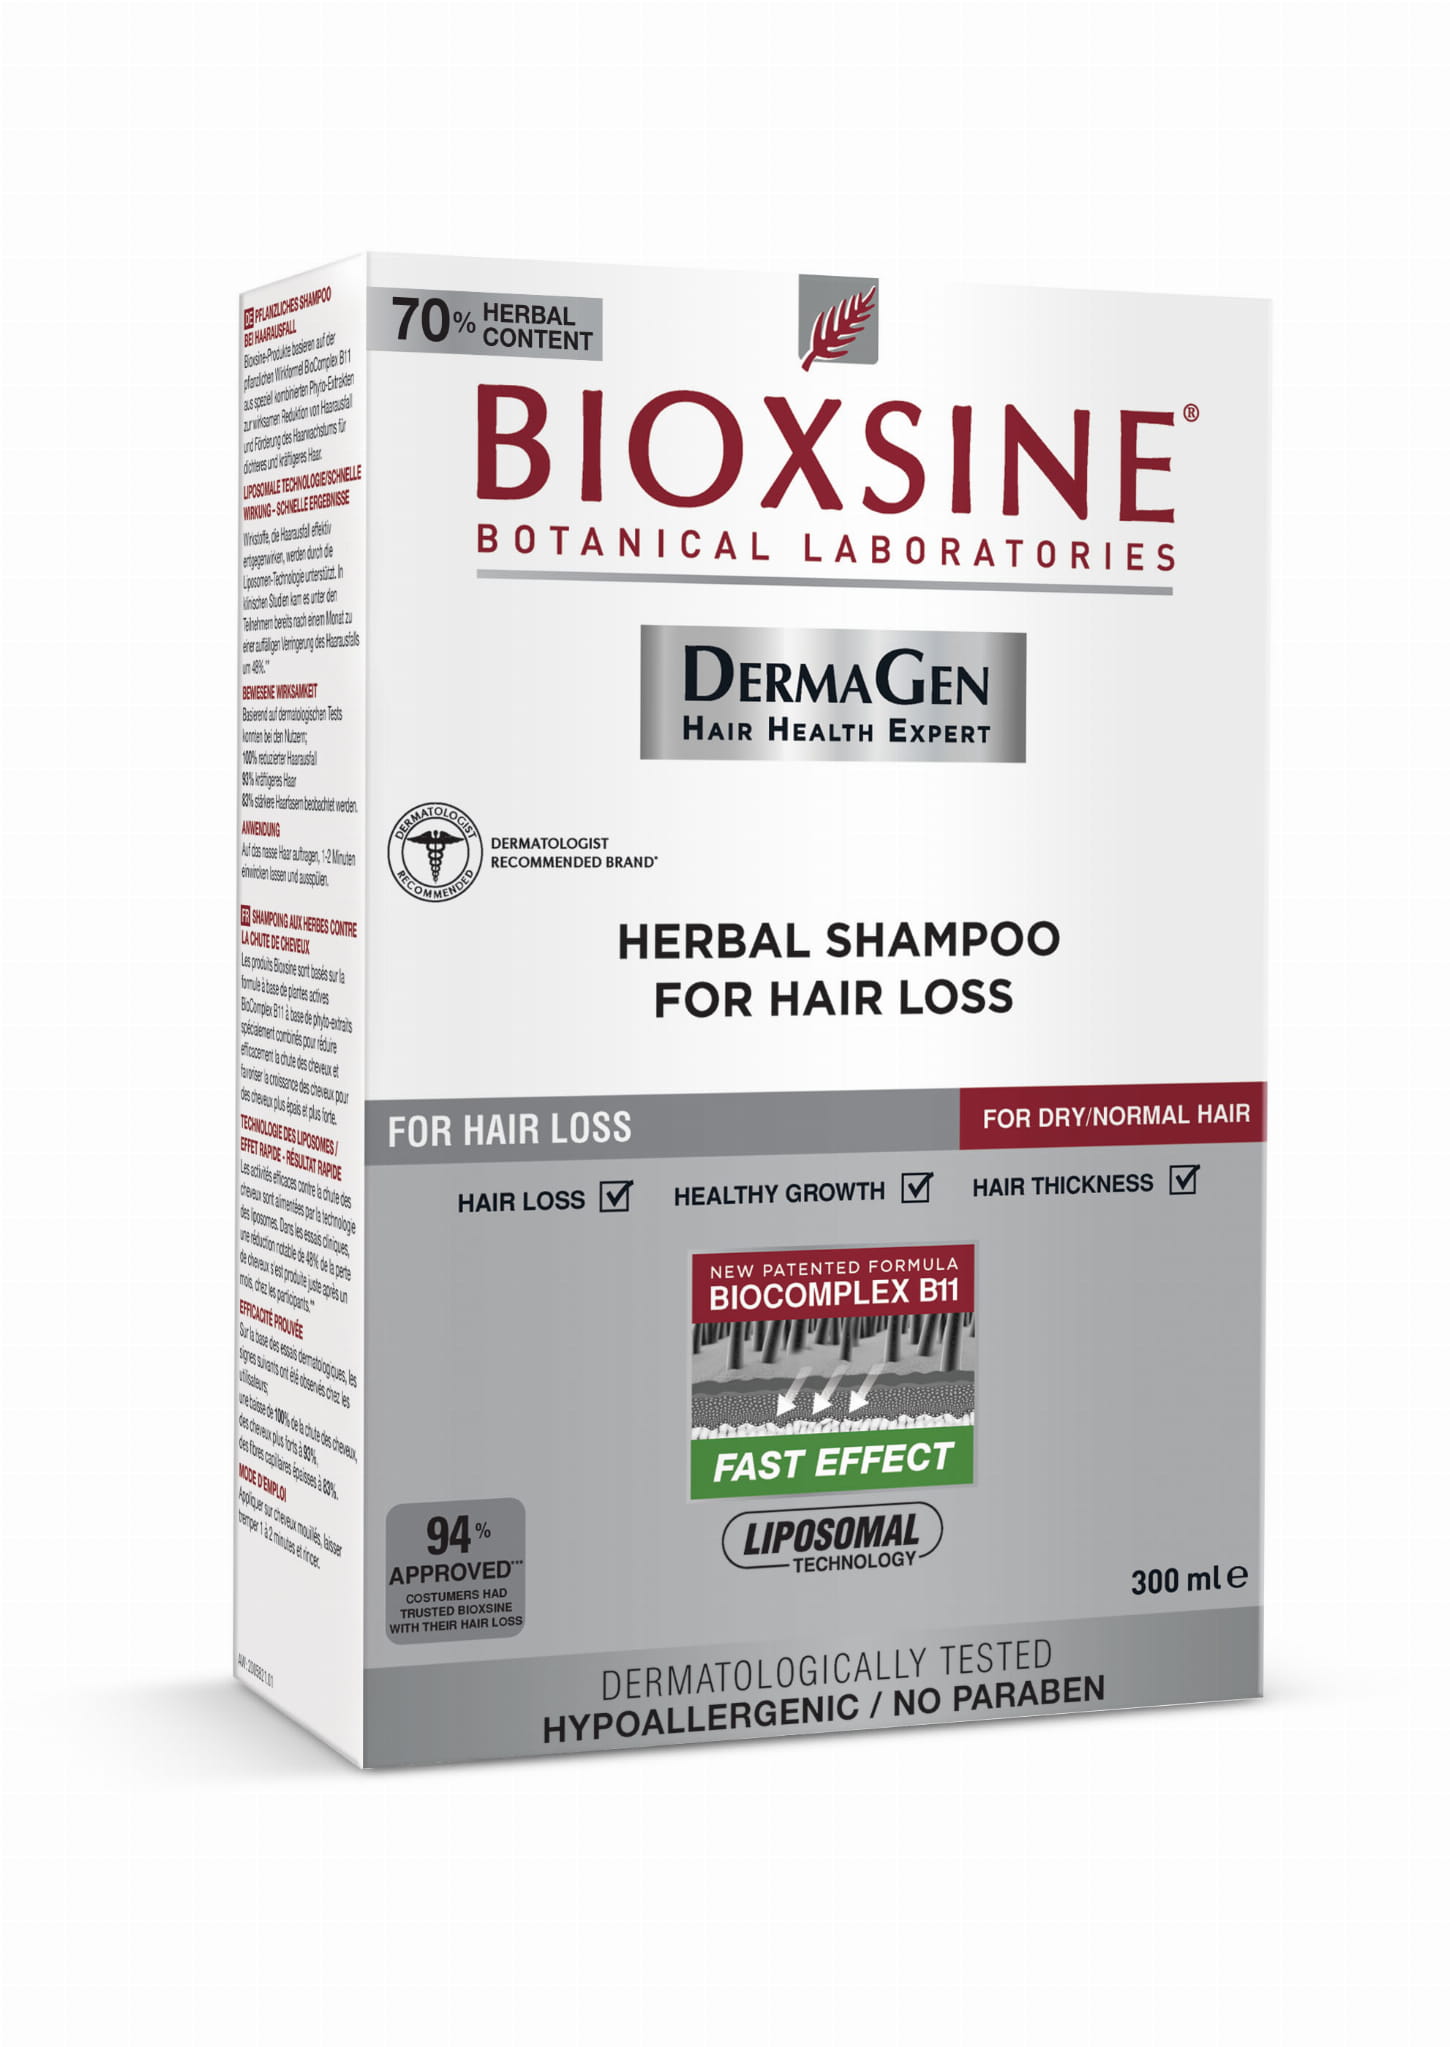 bioxsine szampon do włosów suchych